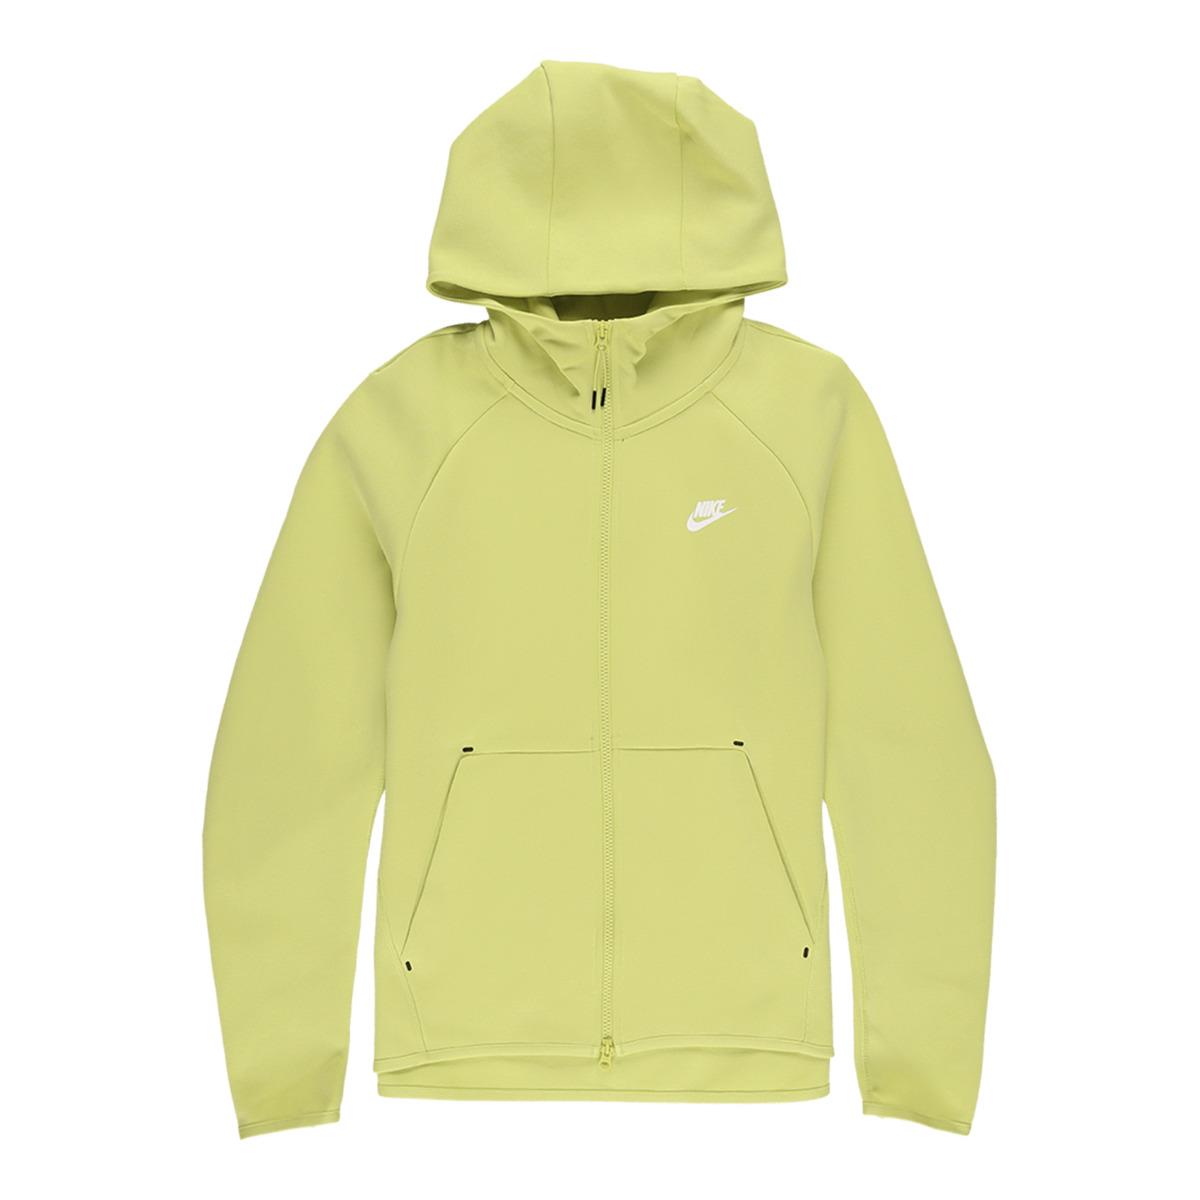 Nike Sportswear Tech Fleece Full Zip Lime Hoodie 928483-367 Men s Large Tall